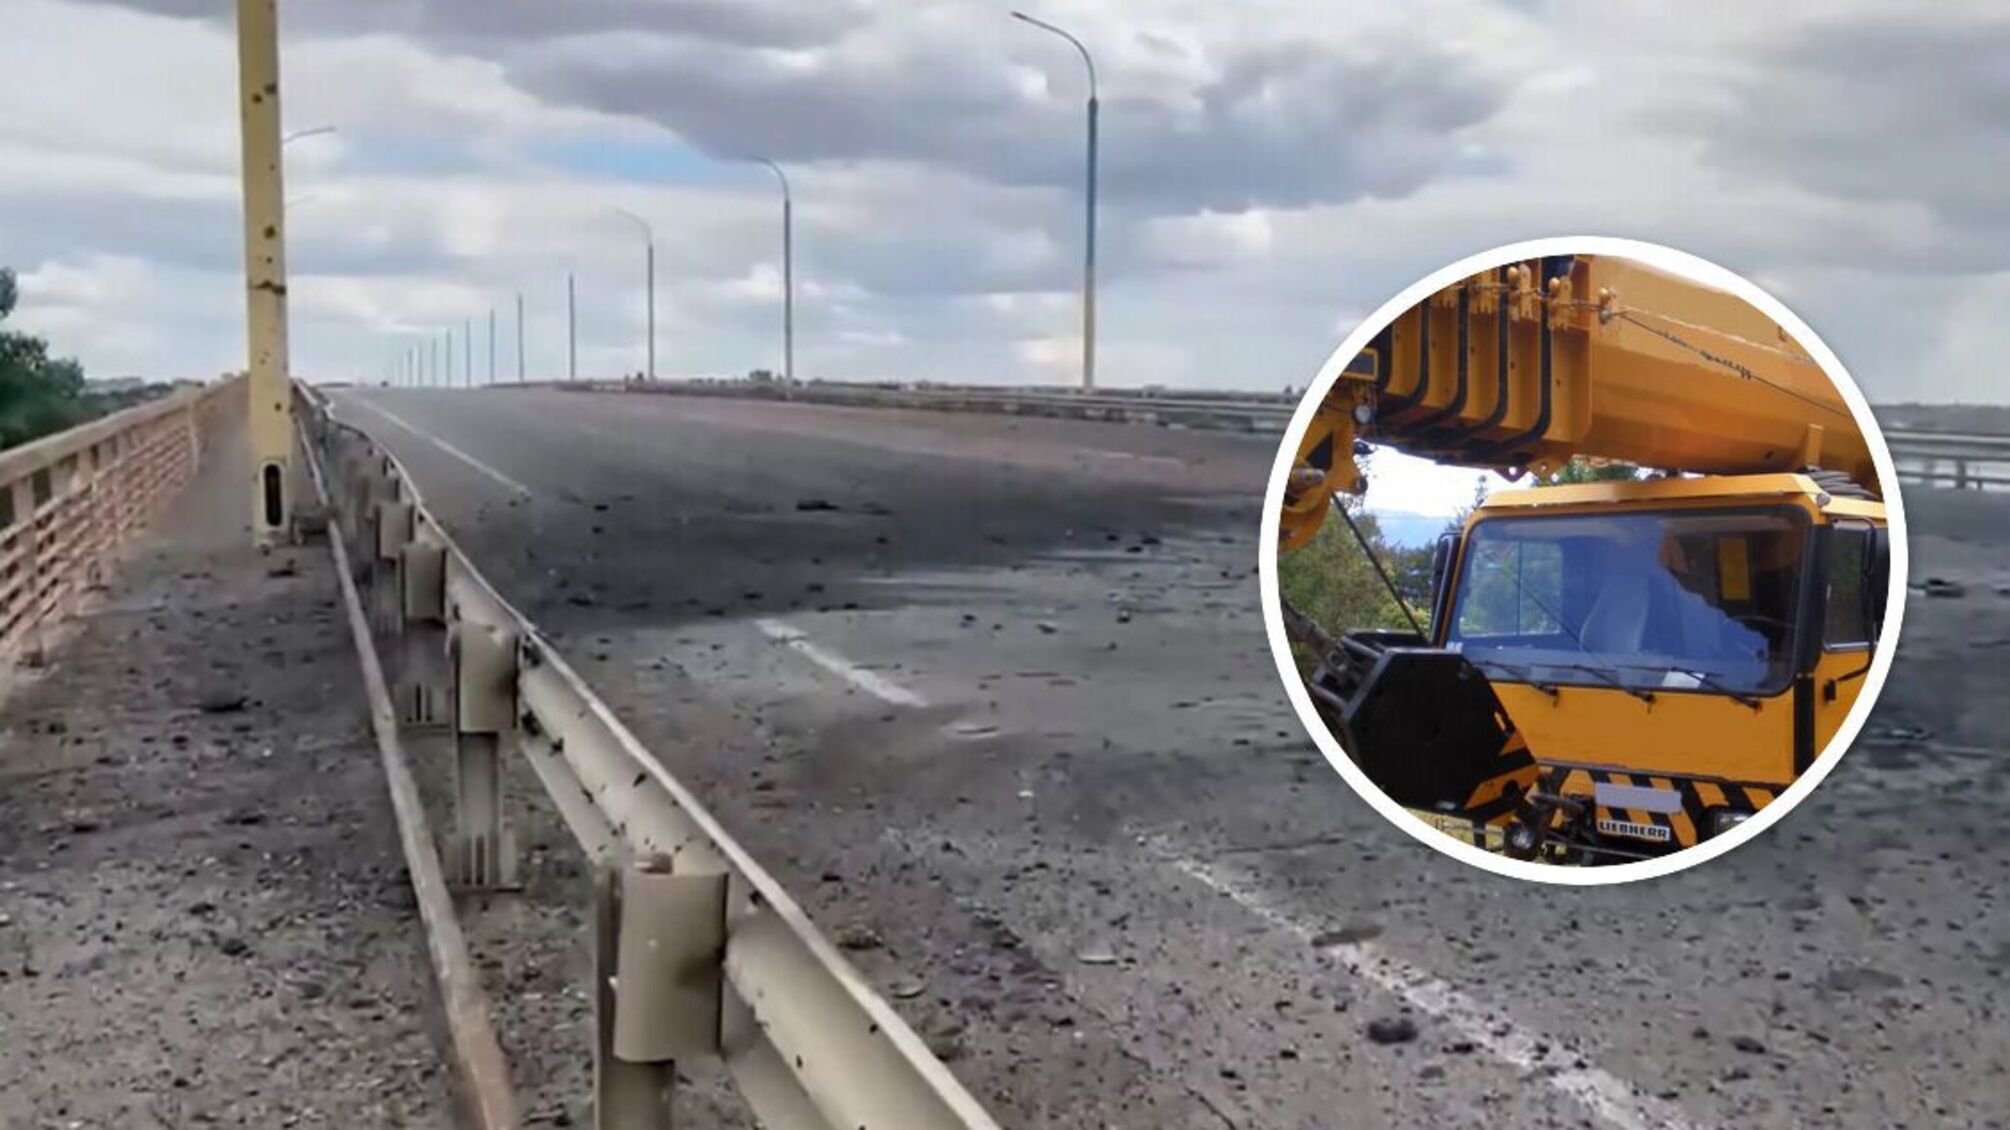 Антоновский мост все еще проездной: пропустил автокран весом около 14 тонн